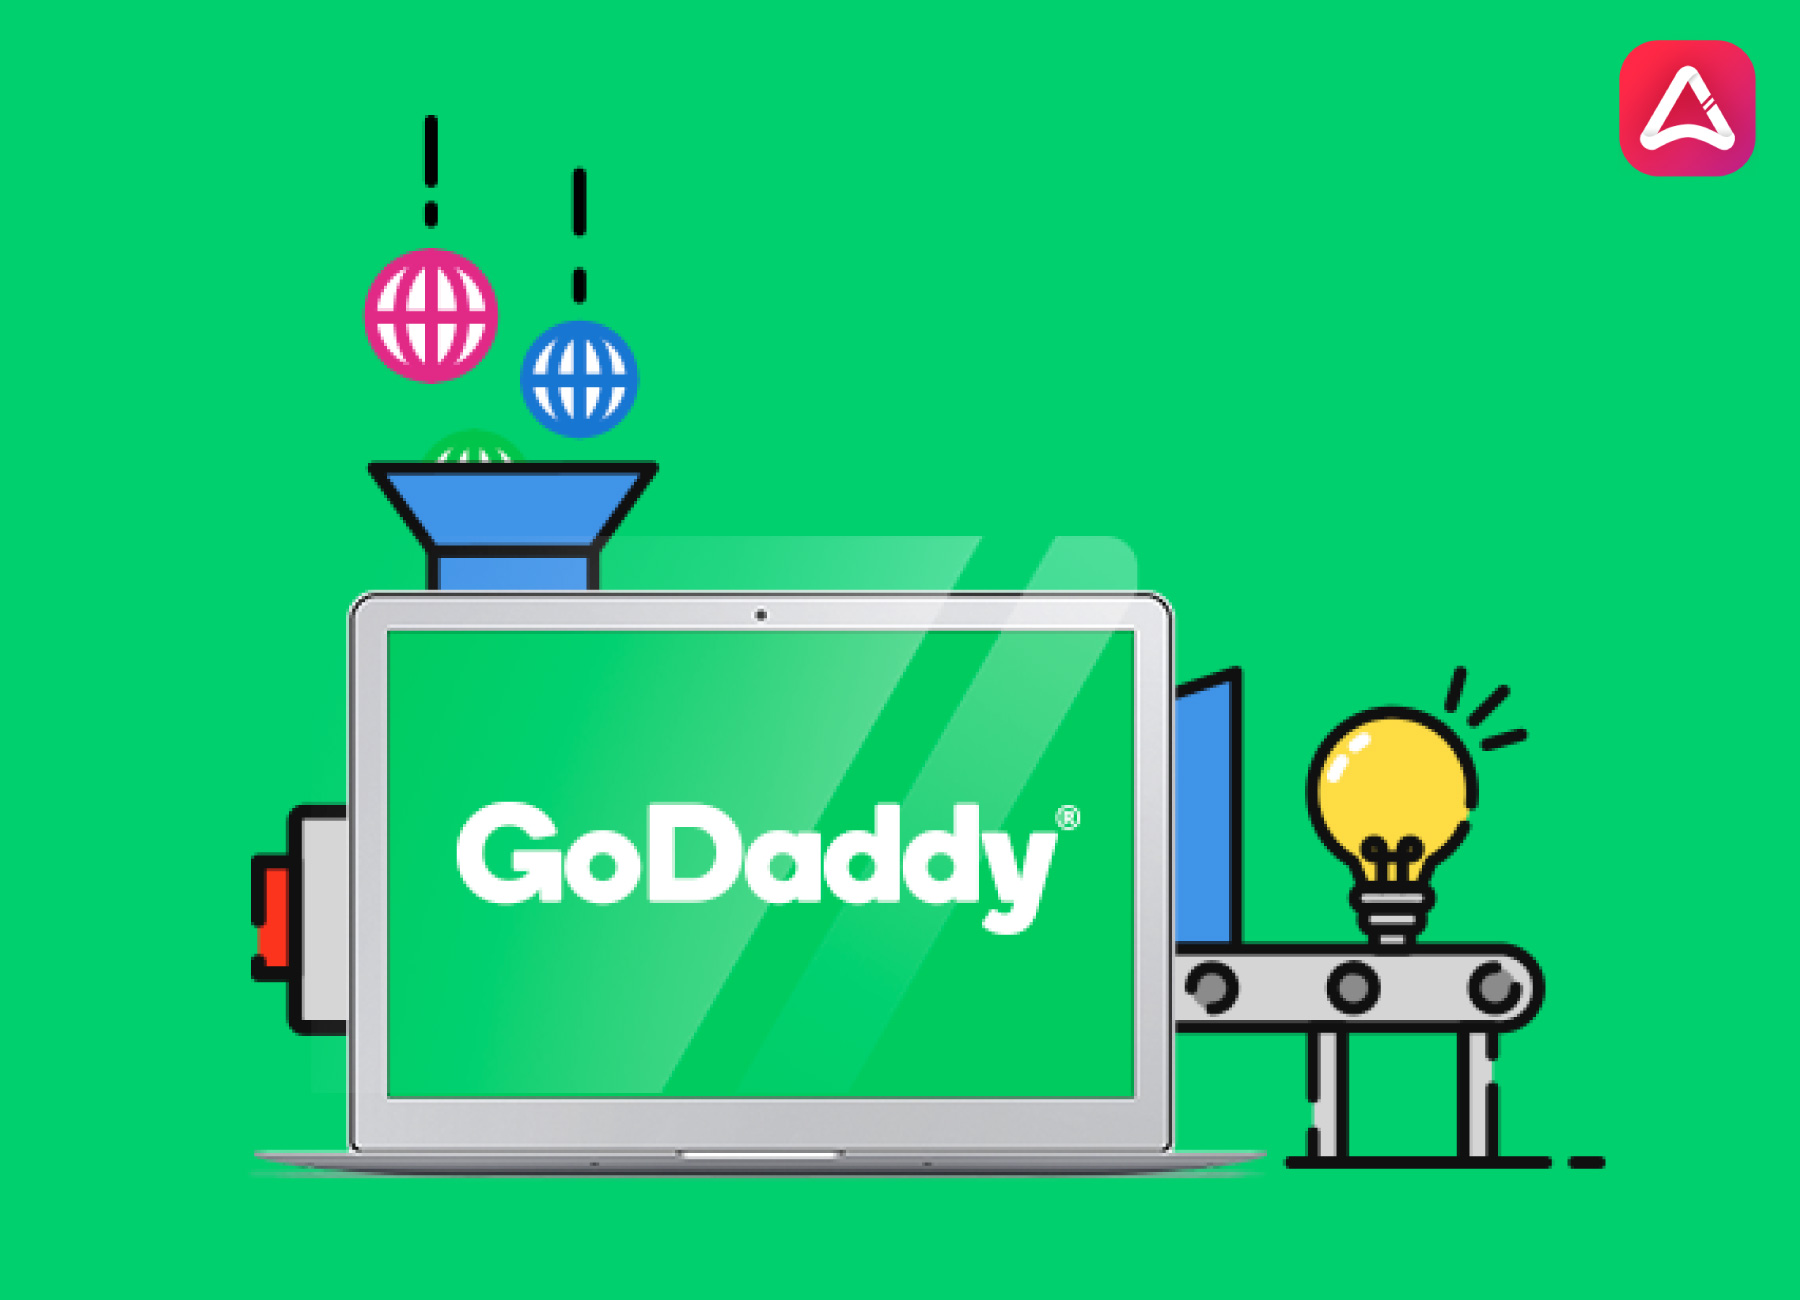 Create A GoDaddy Account